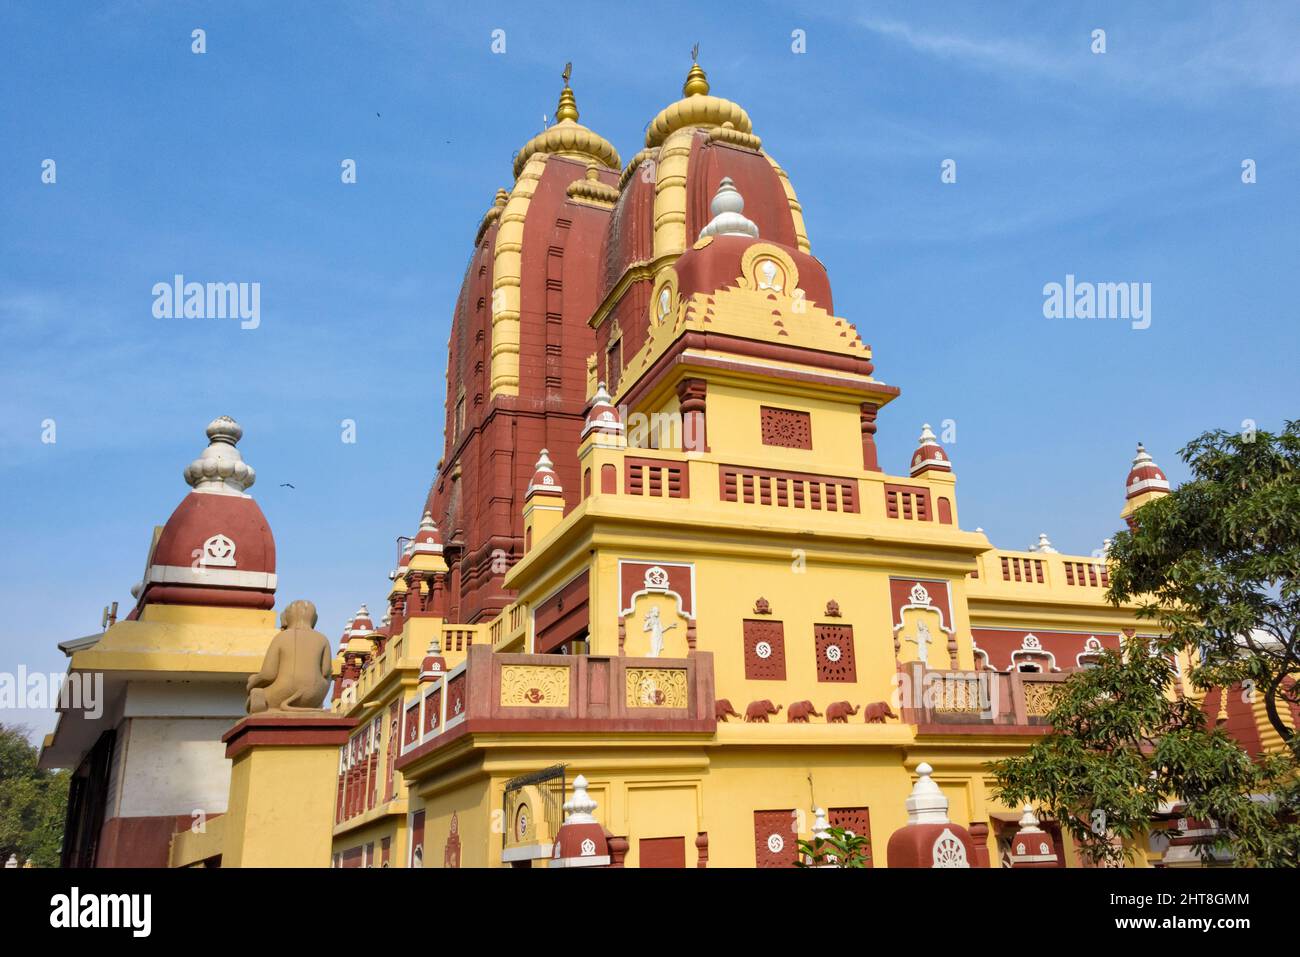 Le temple de Laxminarayan, également connu sous le nom de Birla Mandir, un temple hindou à Delhi, en Inde Banque D'Images